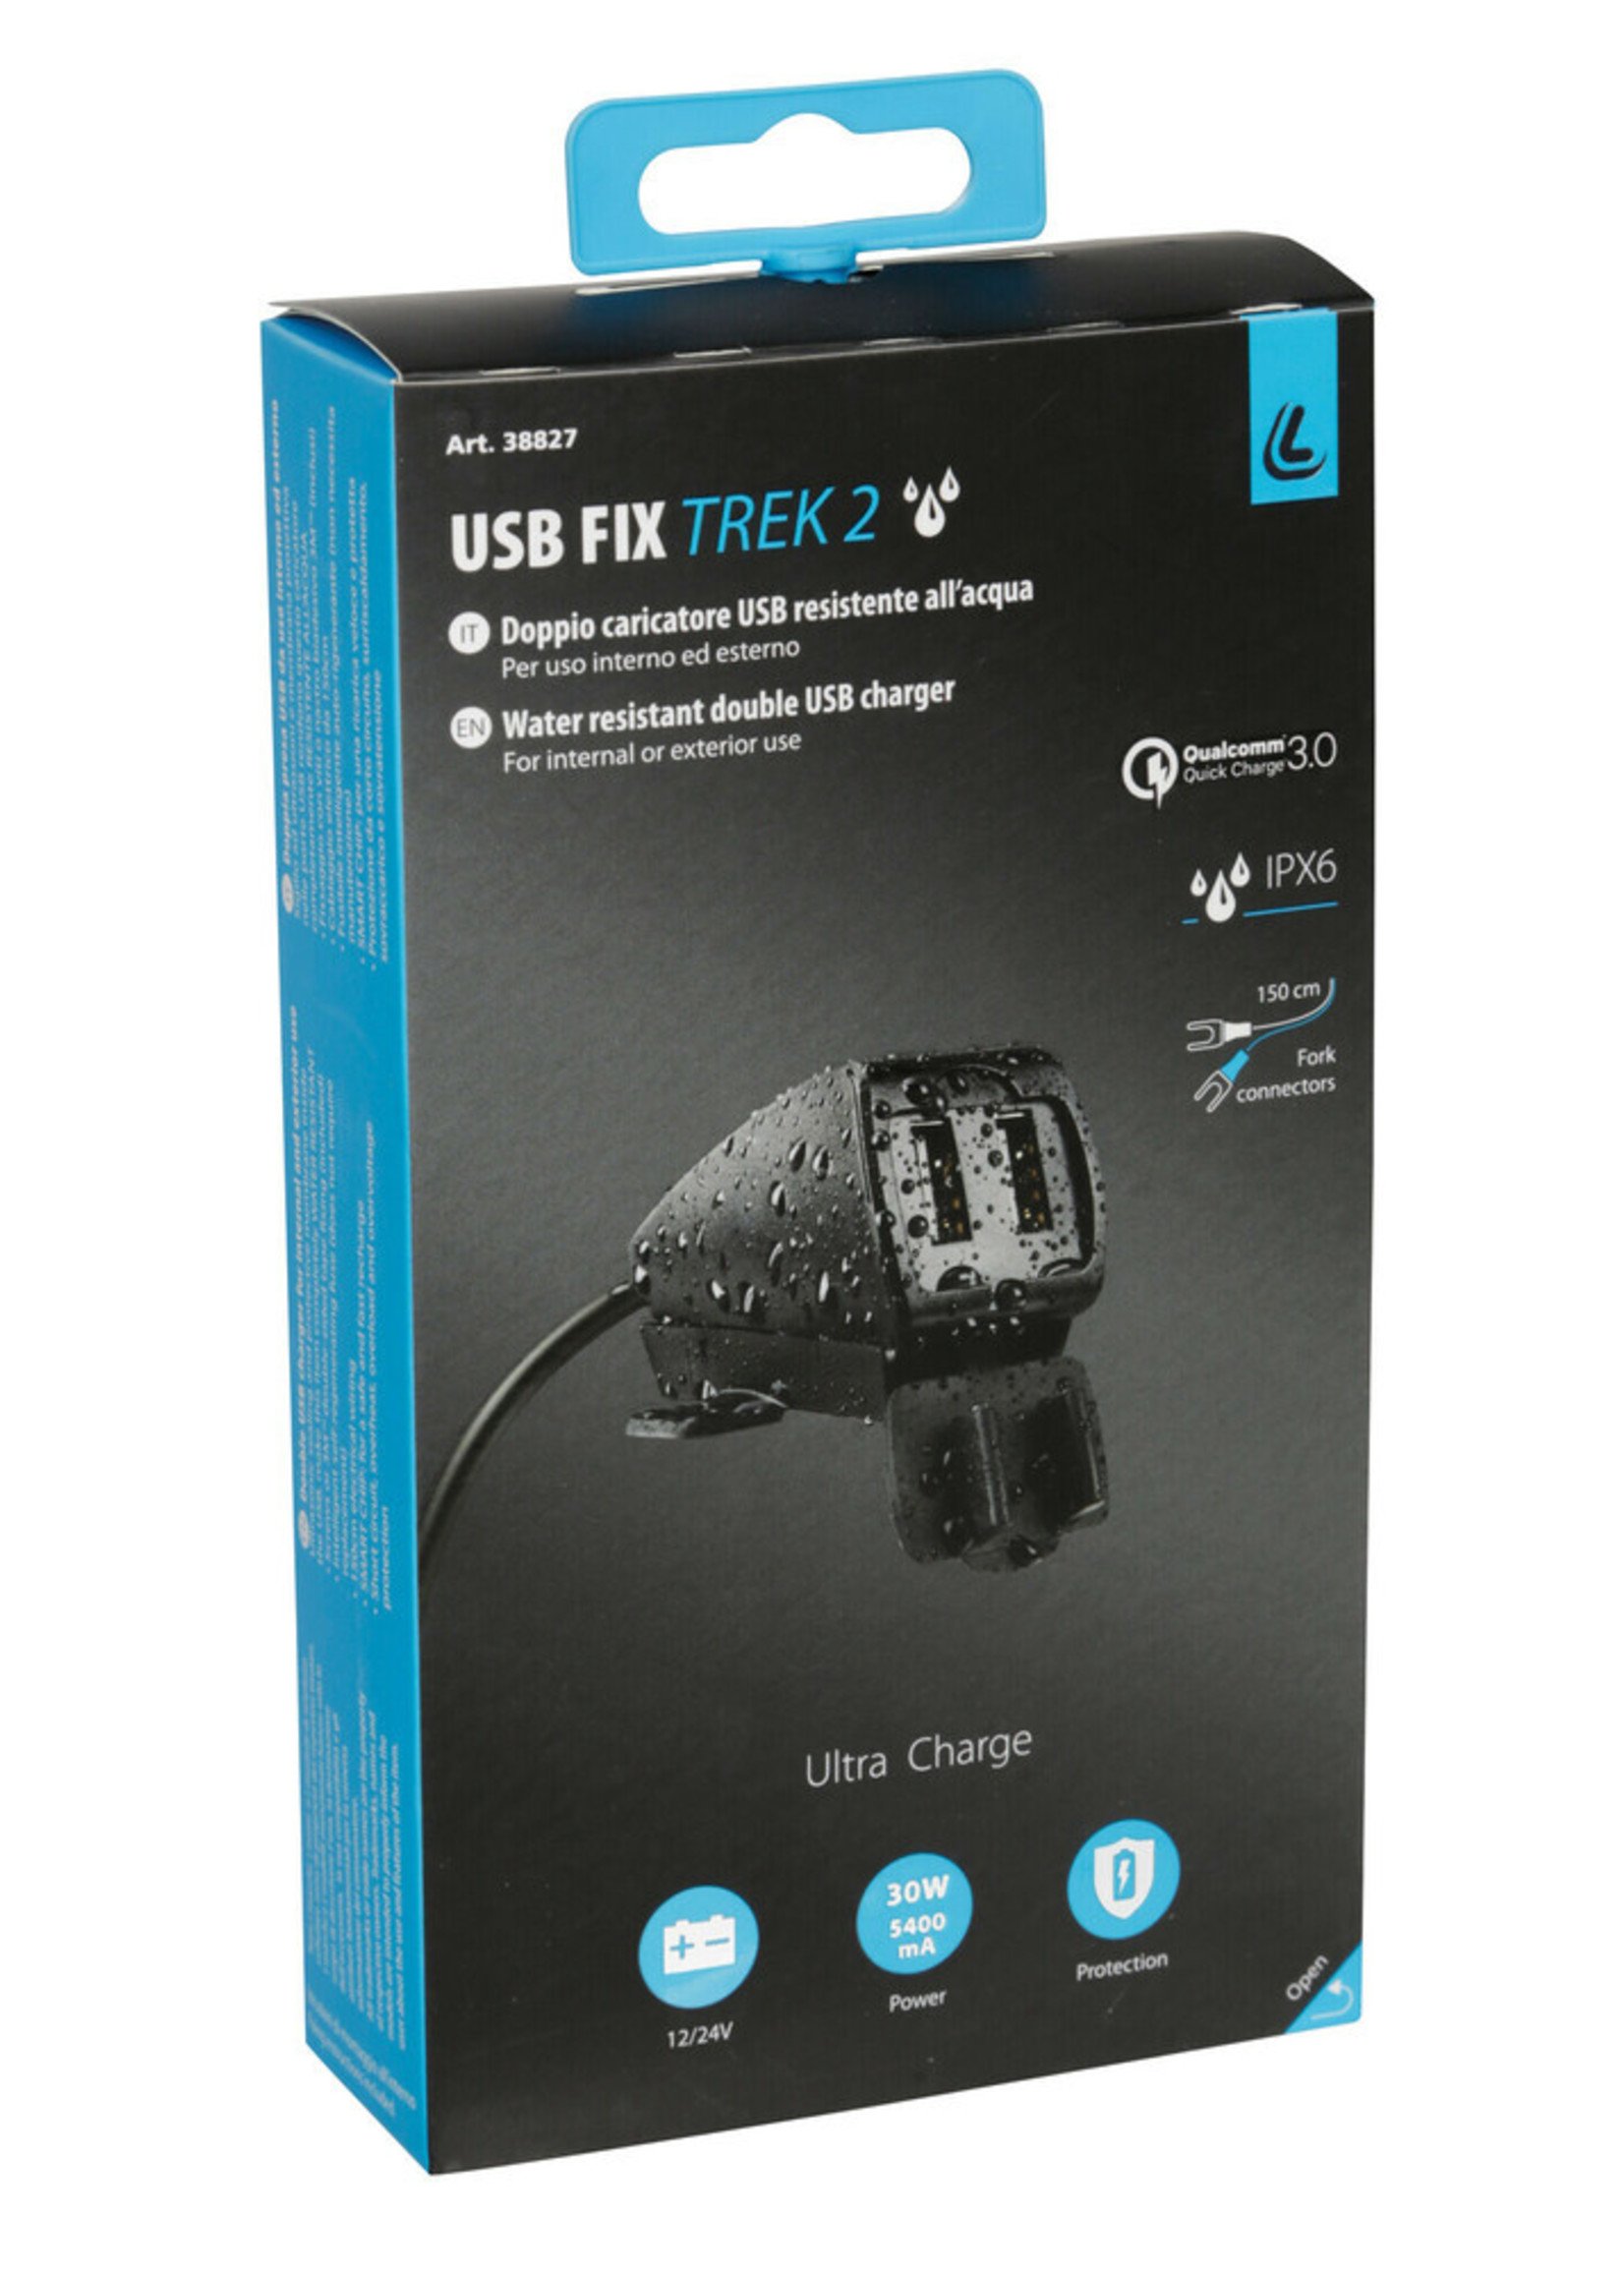 Optiline Usb-Fix Trek 2, regenbestendige dubbele usb-oplader, schroeven of dubbelzijdige tape bevestiging - Ultra Fast Charge - 5400 mA - 12/24V